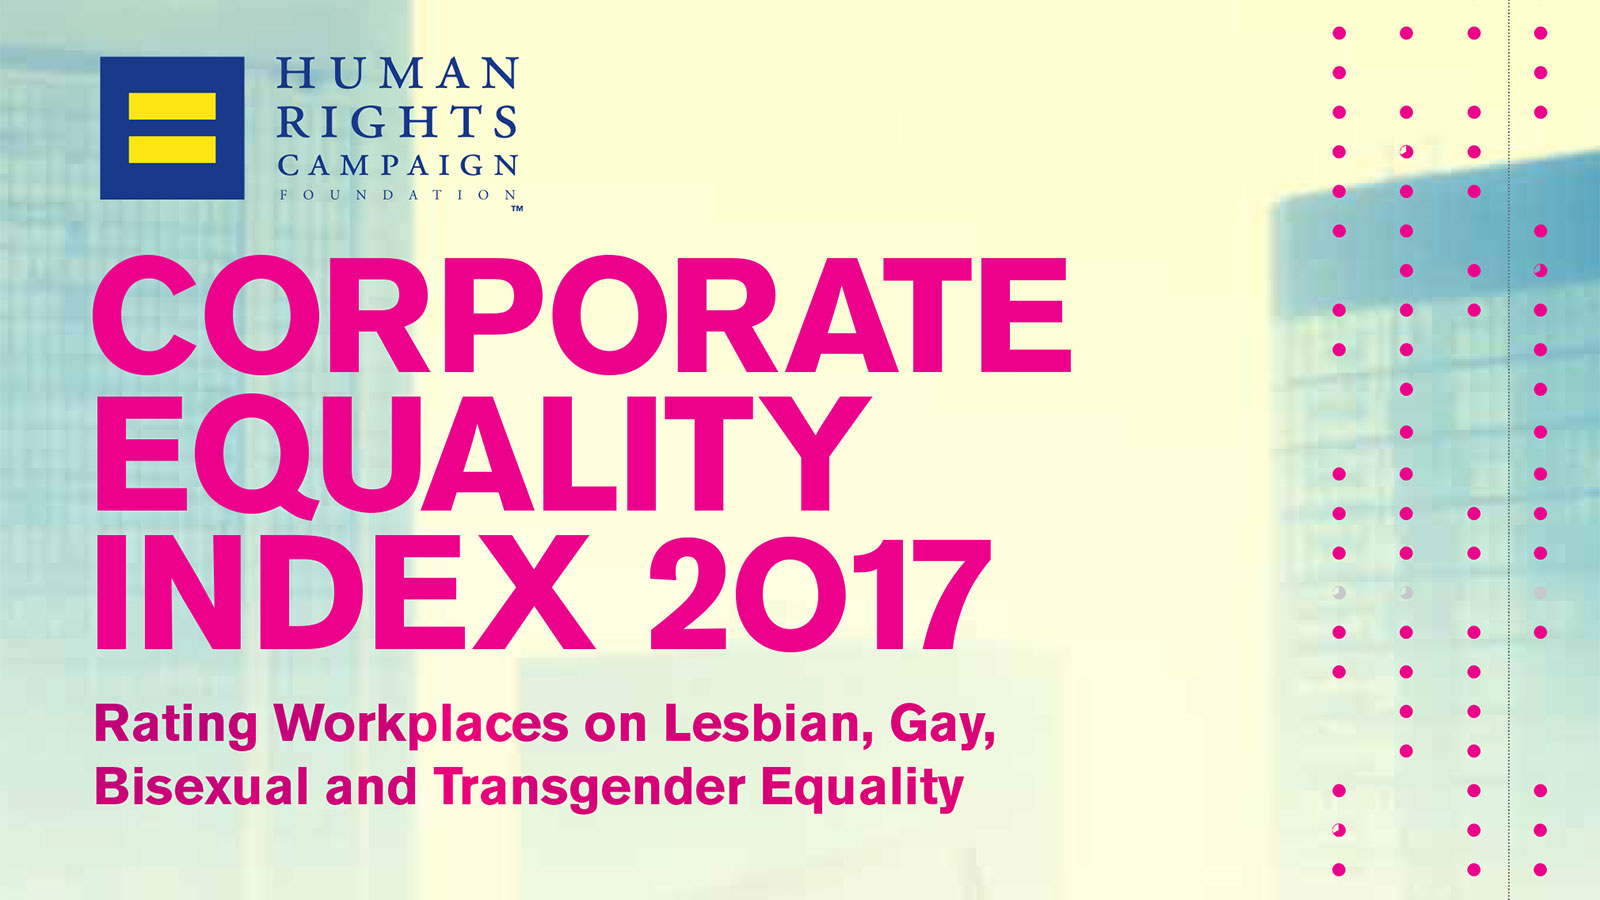 Αποτέλεσμα εικόνας για Rating workplaces on LGBT equality